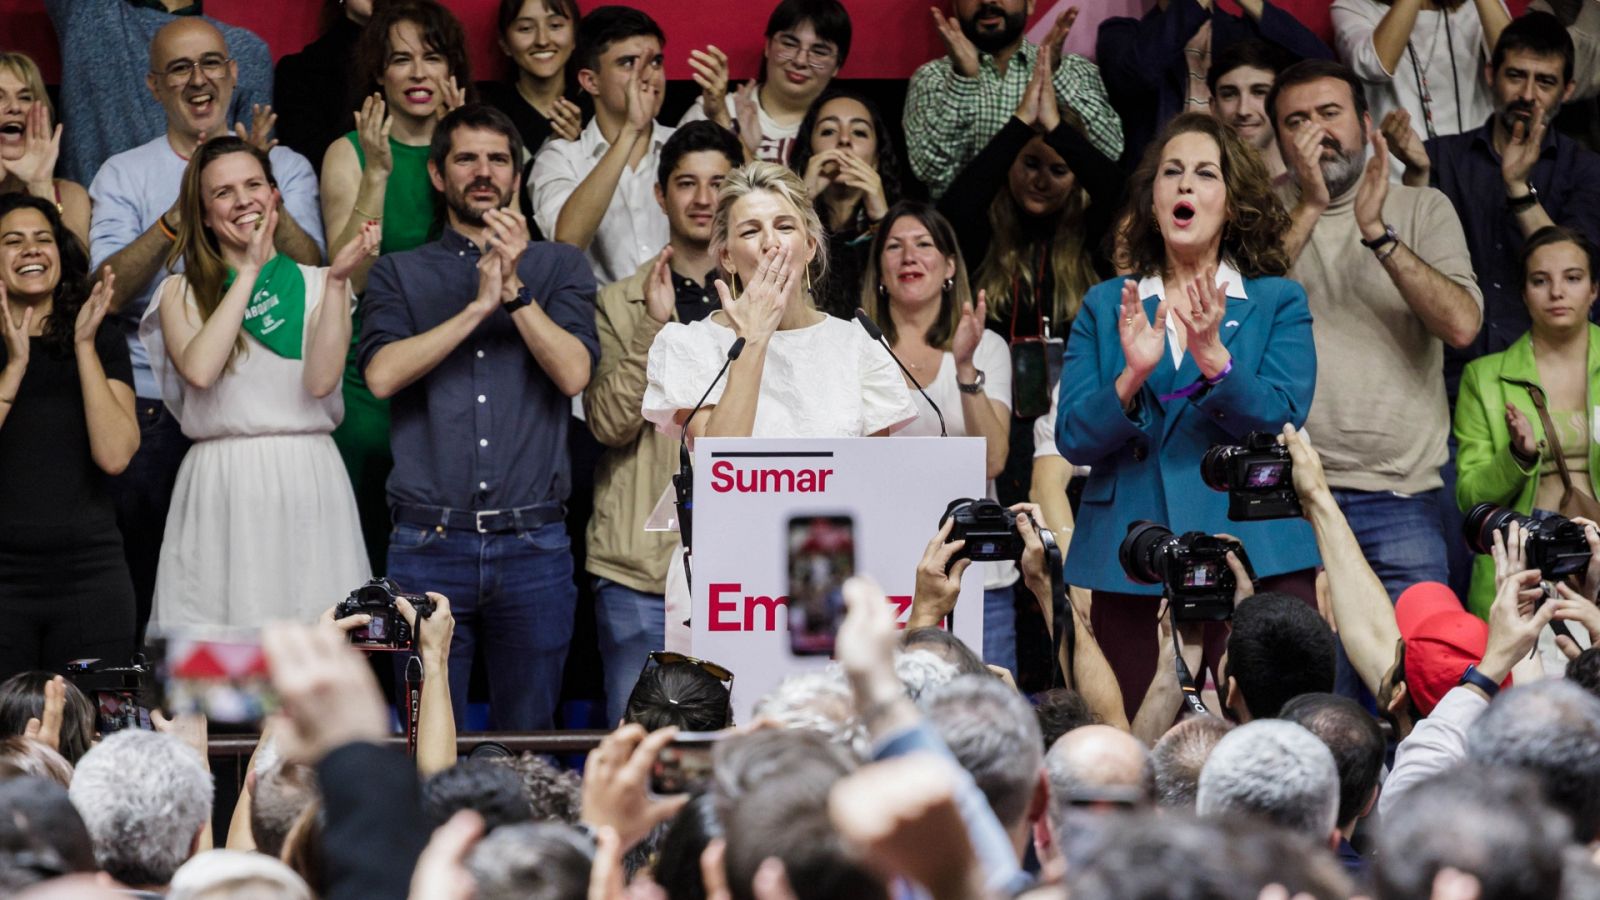 Yolanda Díaz anuncia su candidatura a las elecciones: "Quiero ser la primera presidenta de España"